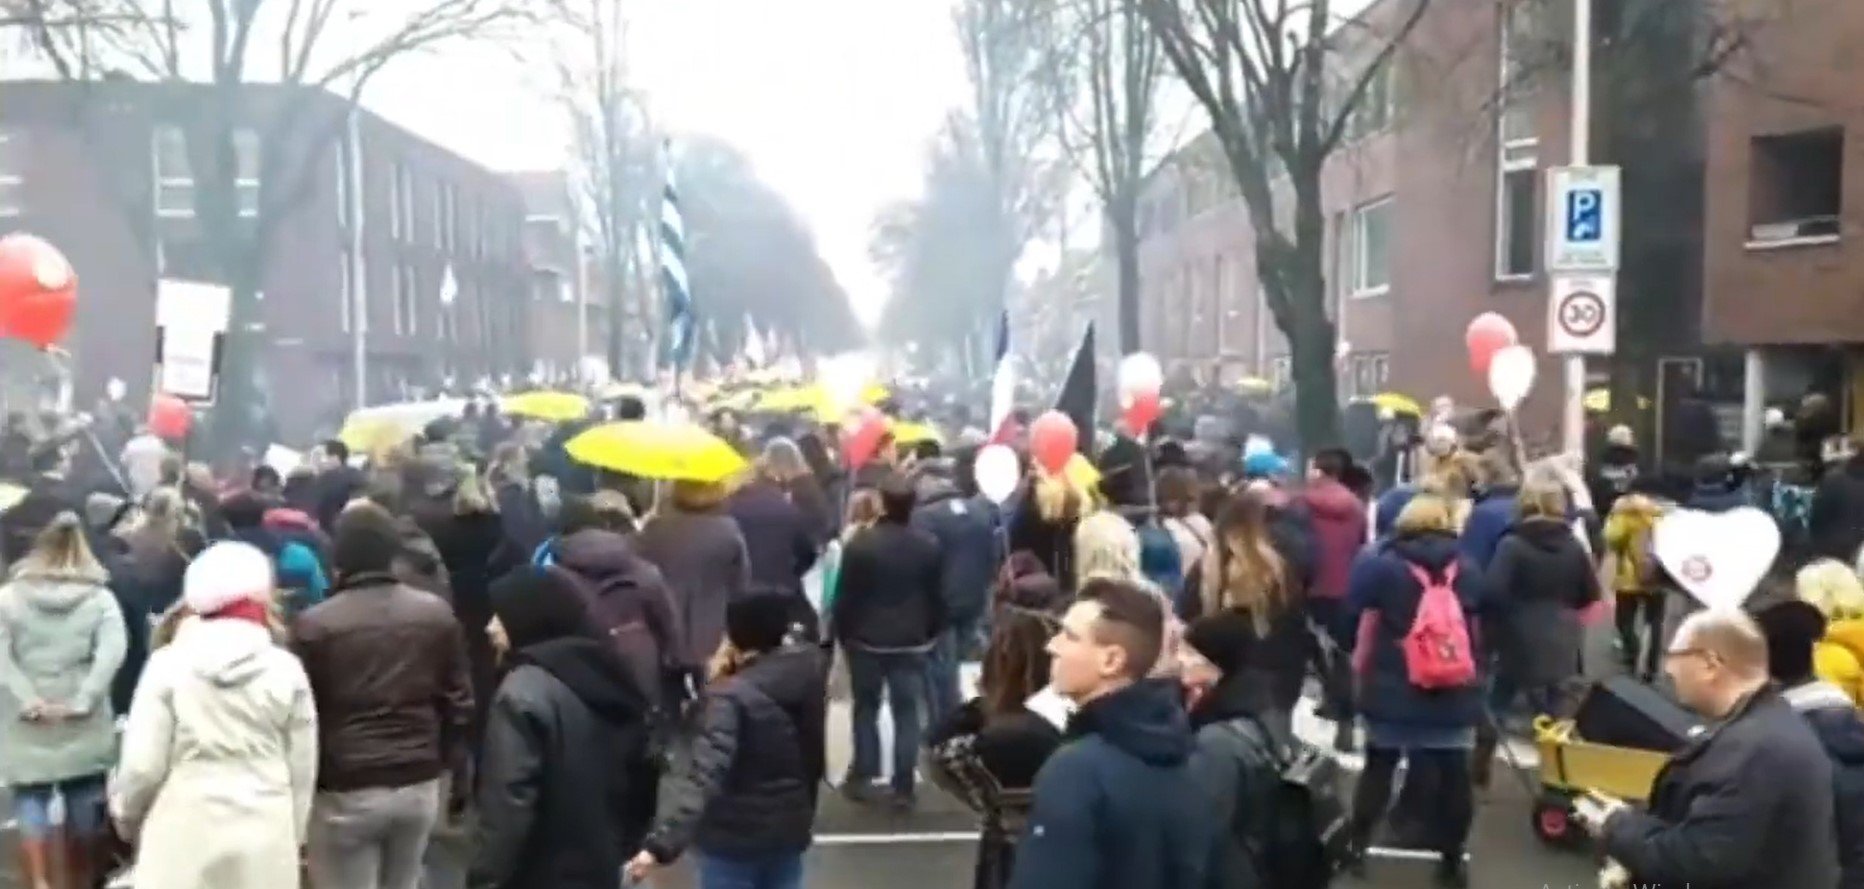  VIDEO – Mii de oameni protestează în Utrecht faţă de restricţiile sanitare impuse